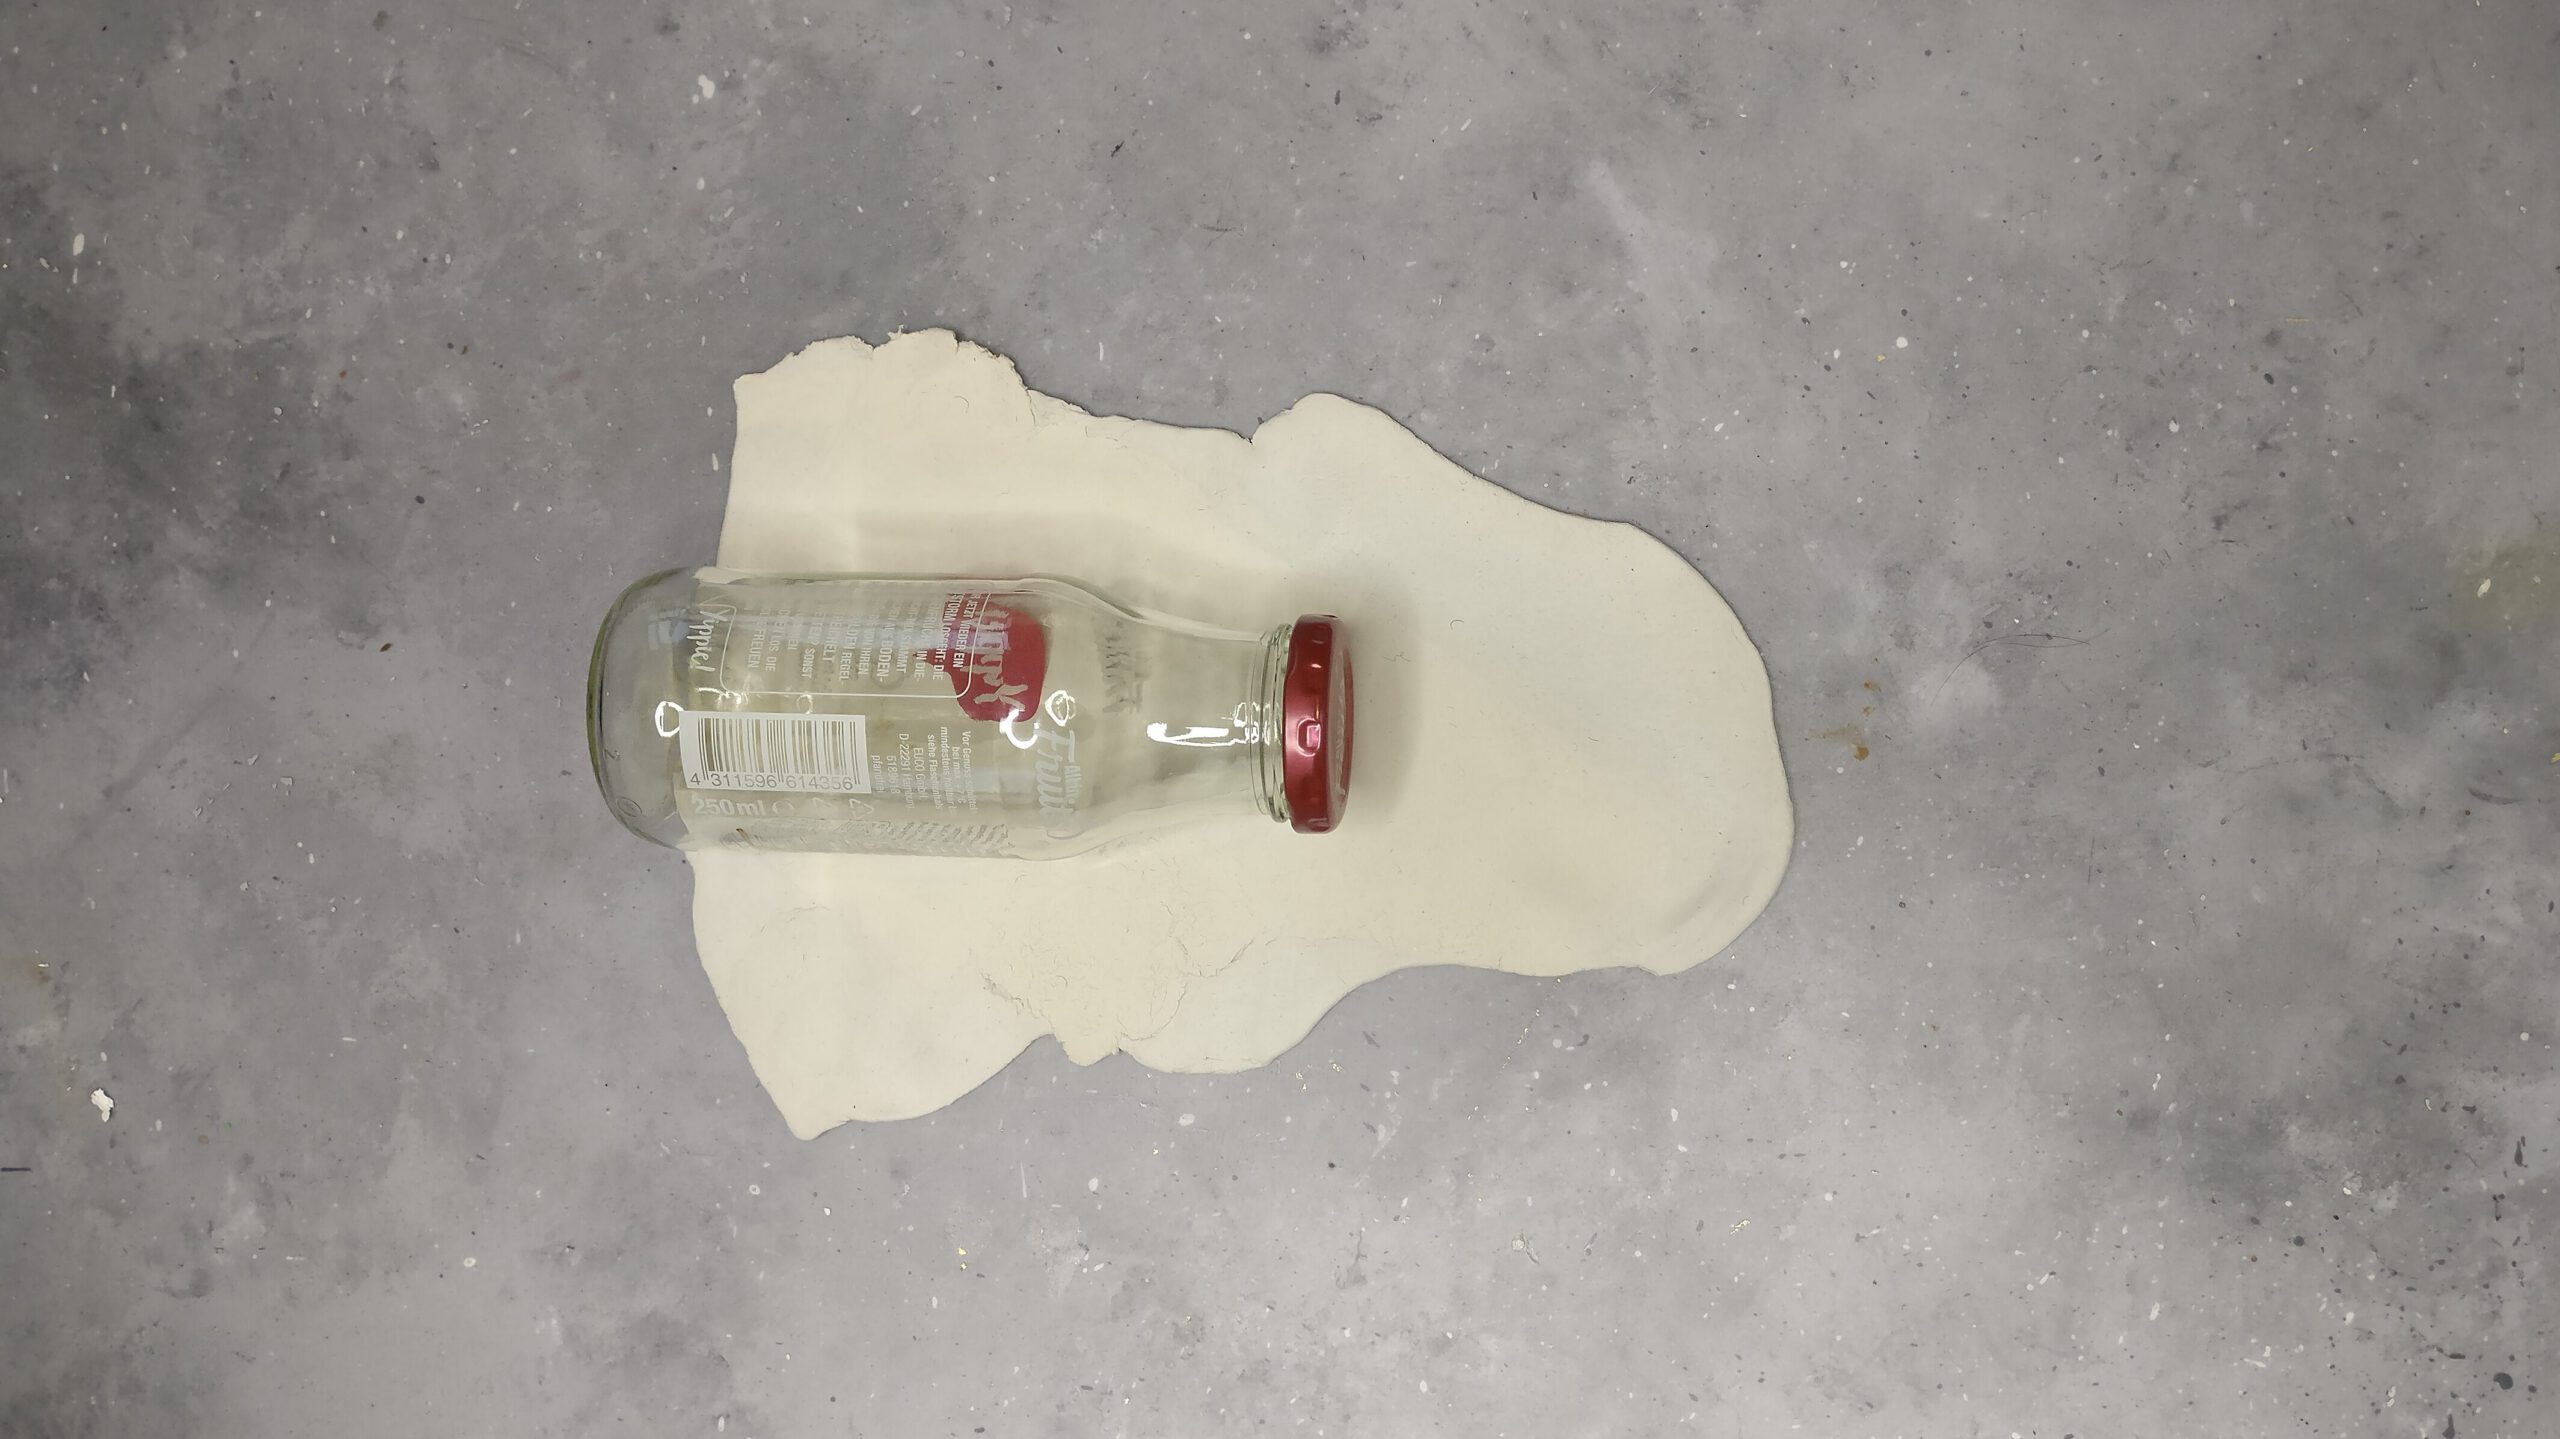 Hirsch aus Altglas basteln Schritt 2: Glasflasche ummanteln